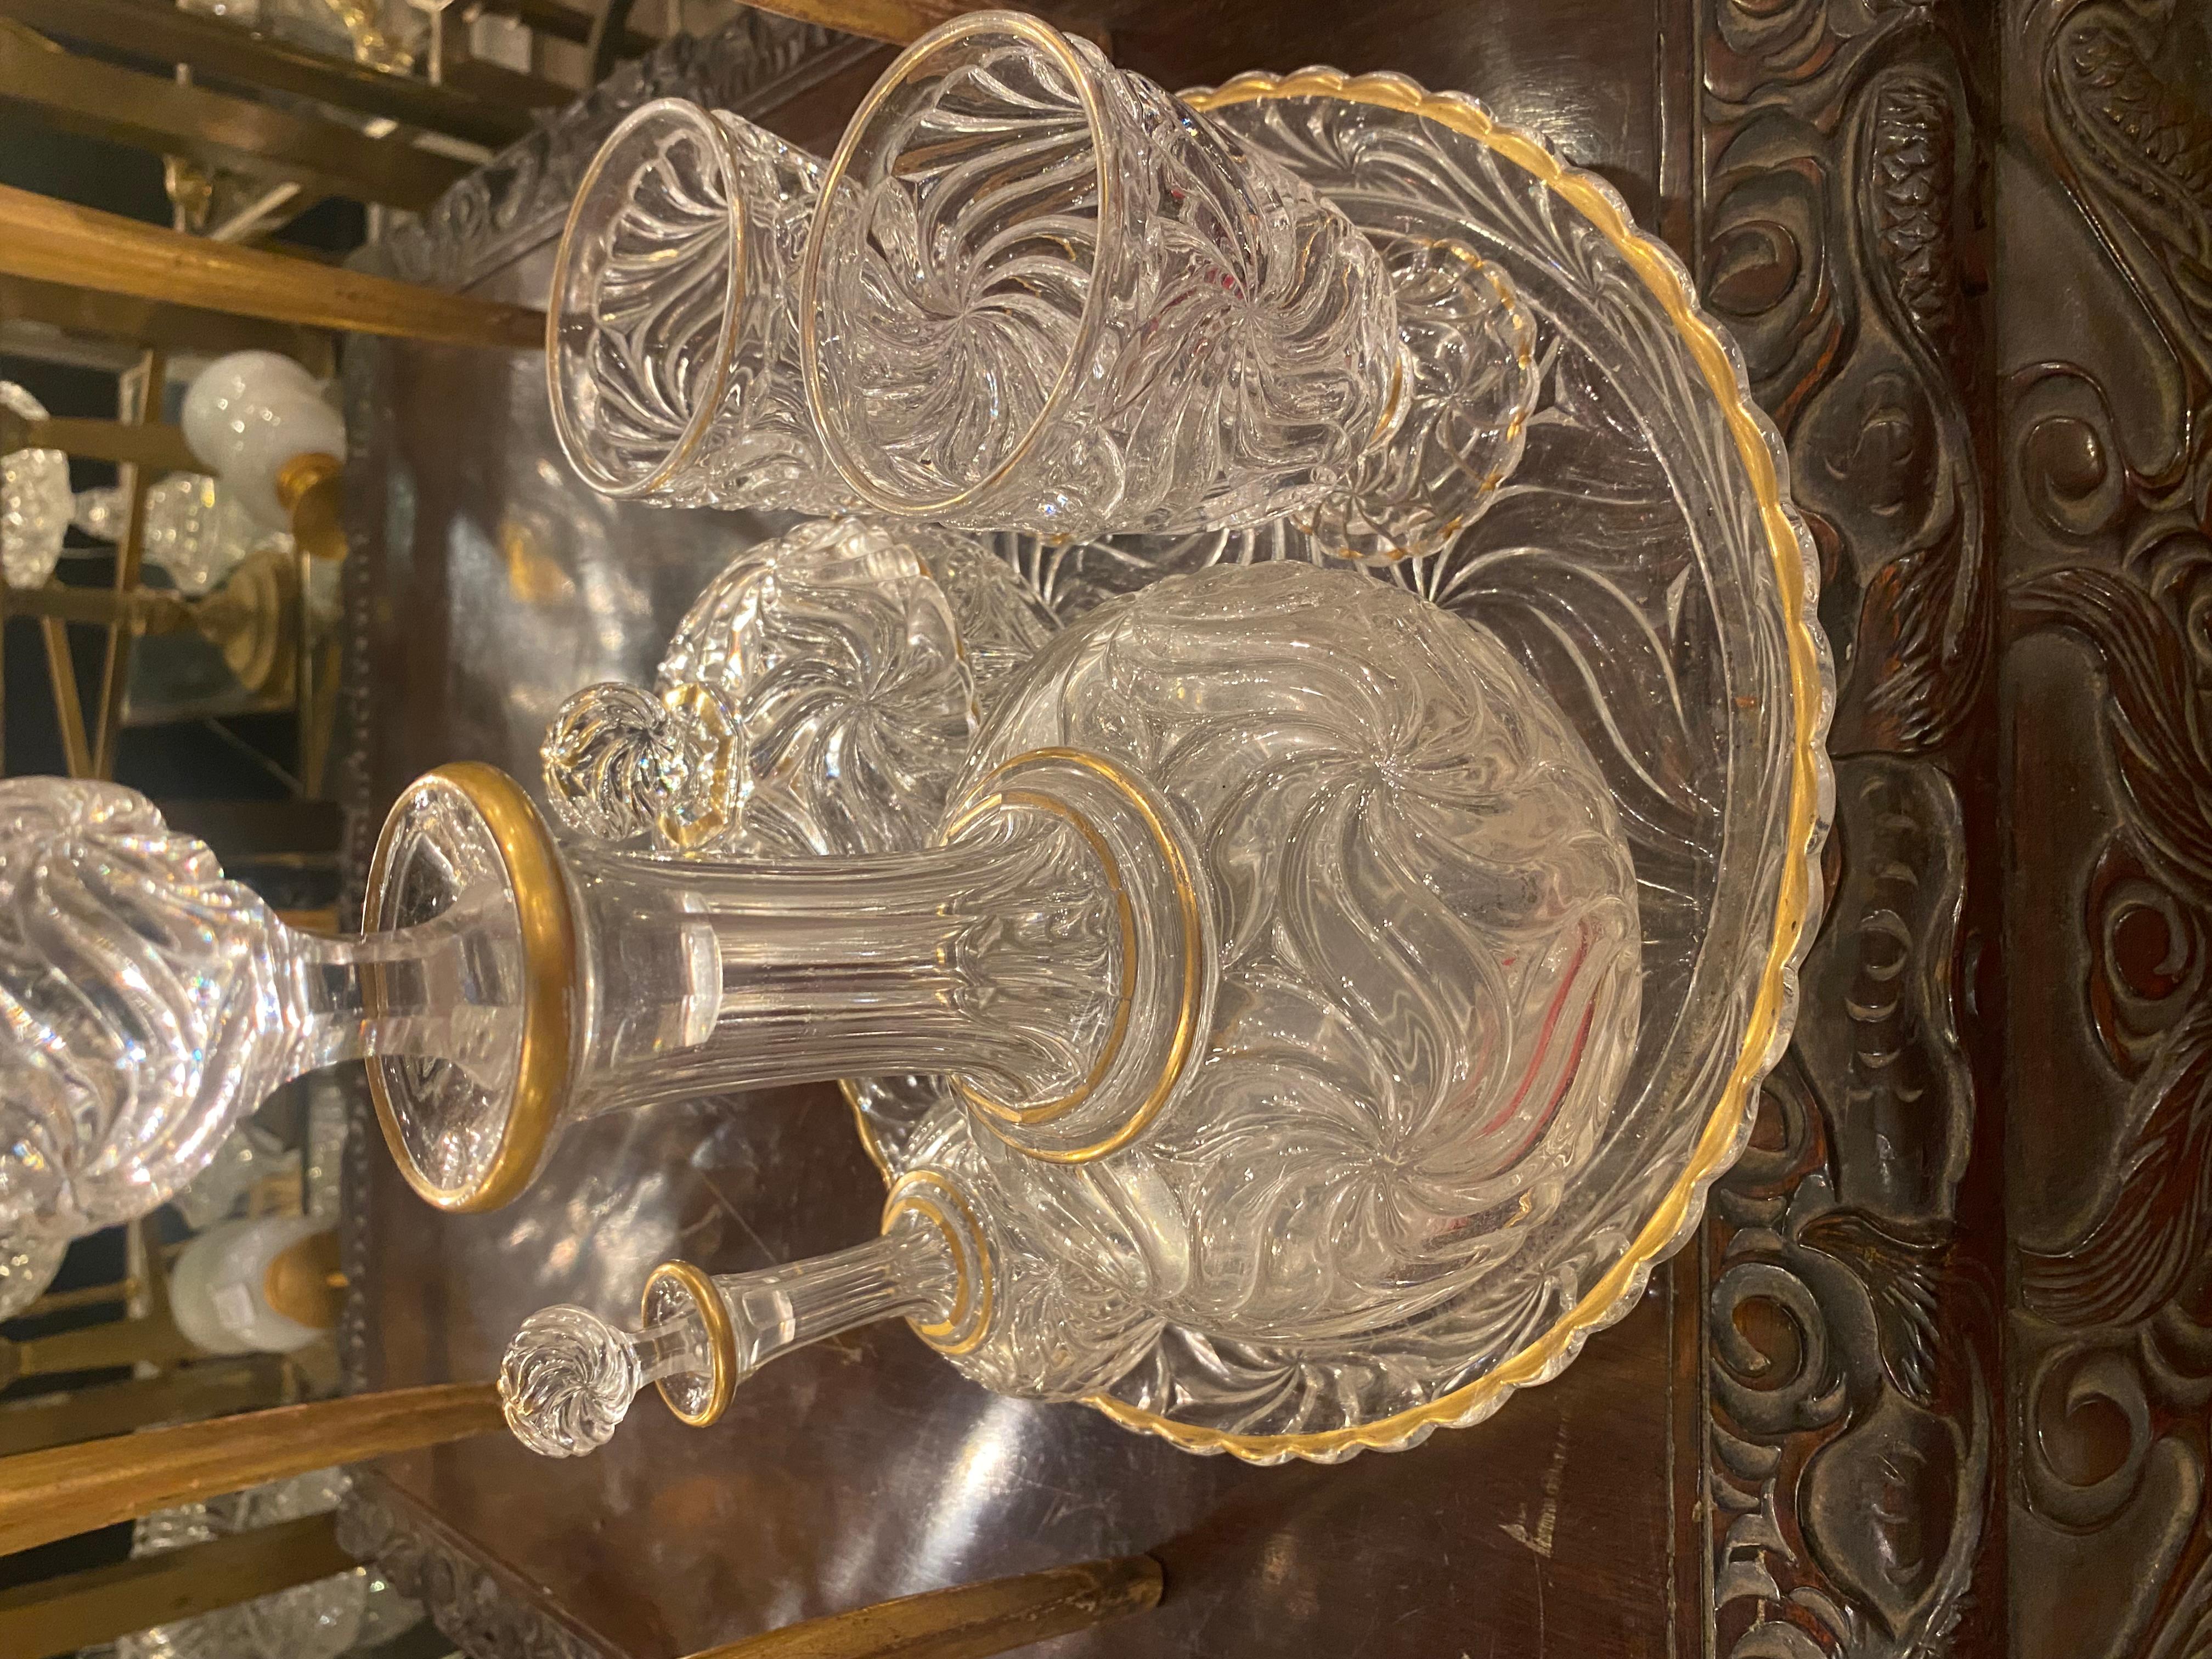 Service de nuit en cristal de Baccarat signé avec dorure
1 plat rond, diamètre 29 cm
2 carafes
2 verres
1 bonbonnière
Condition d'utilisation
Étoile de mer décorative 